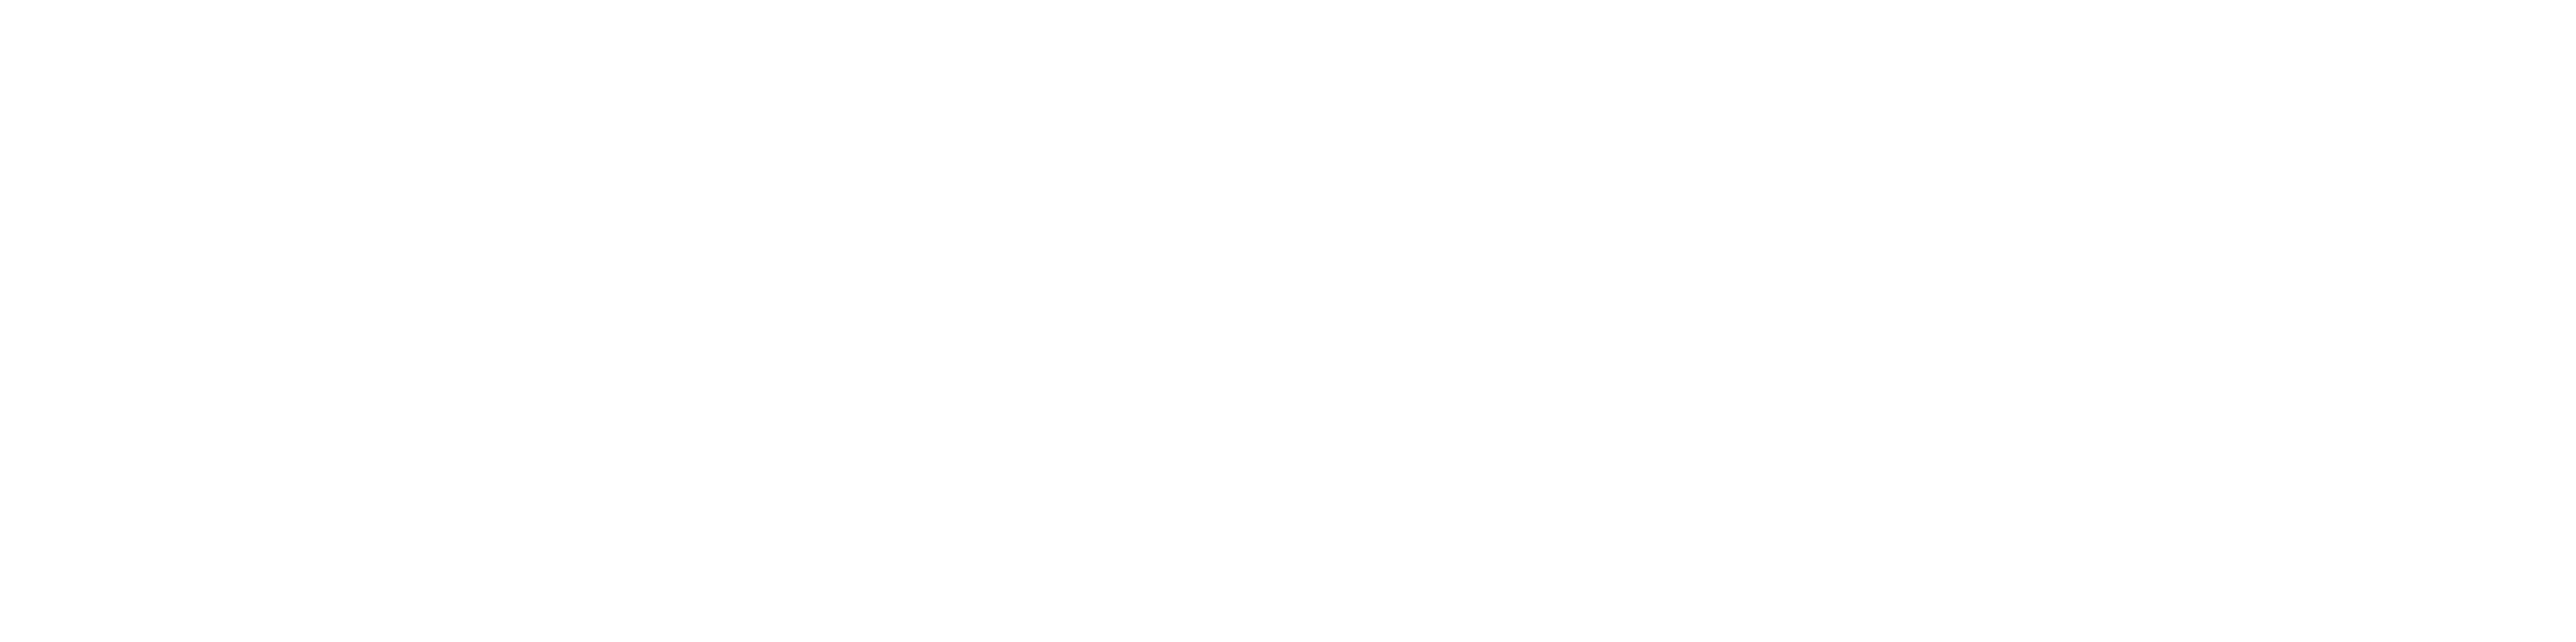 Women’s Health Interactive